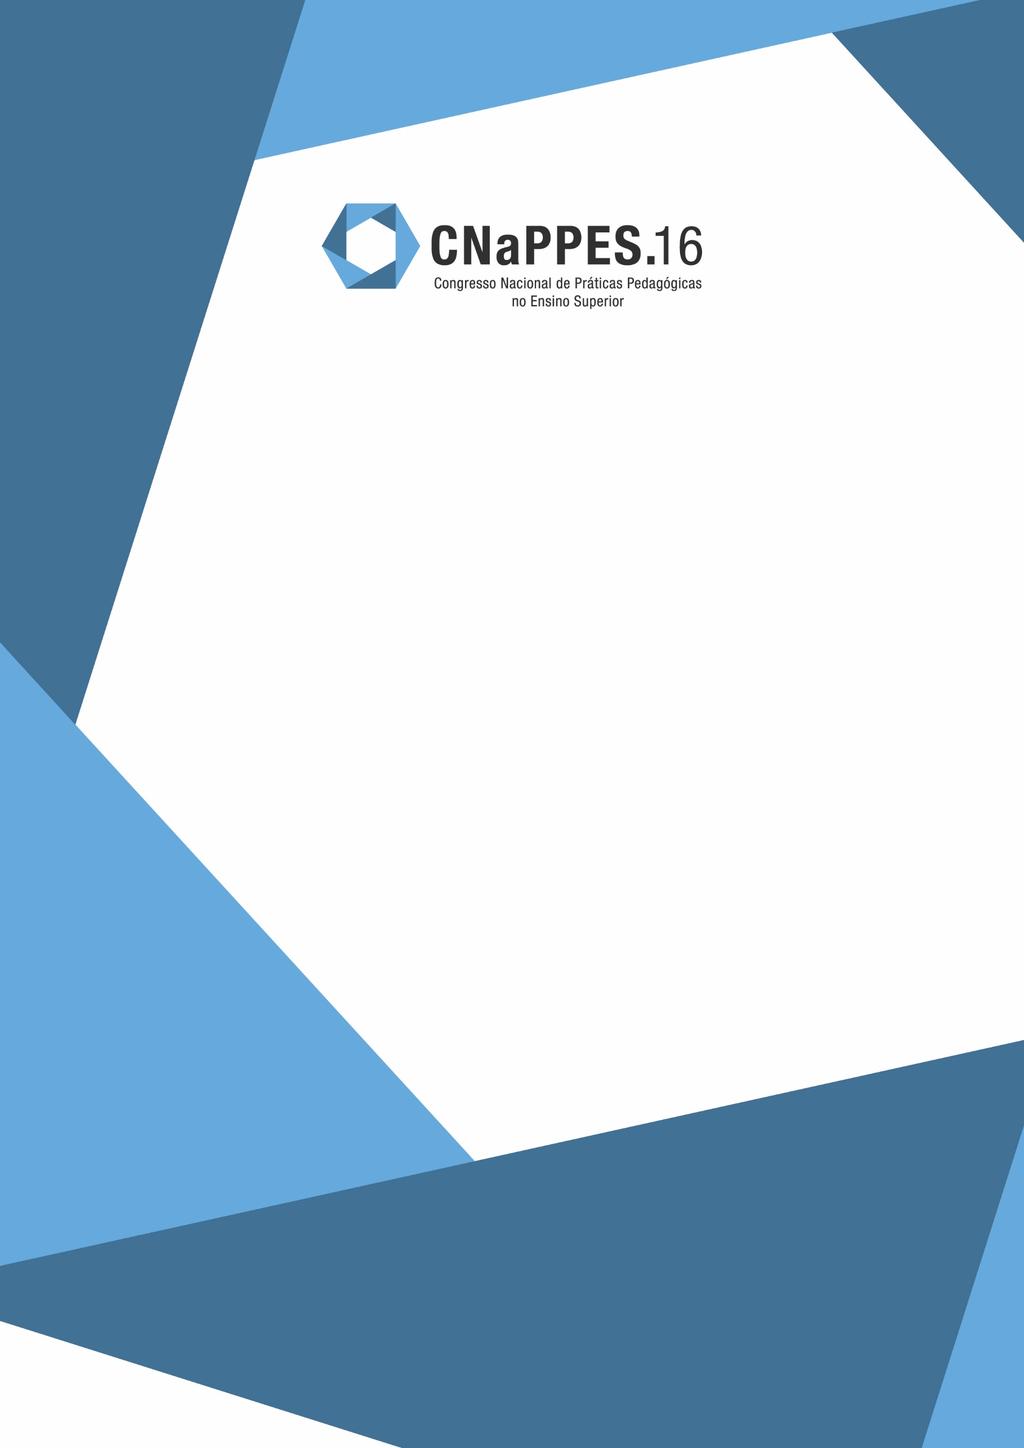 CNaPPES 2016 Congresso Nacional de Práticas Pedagógicas no